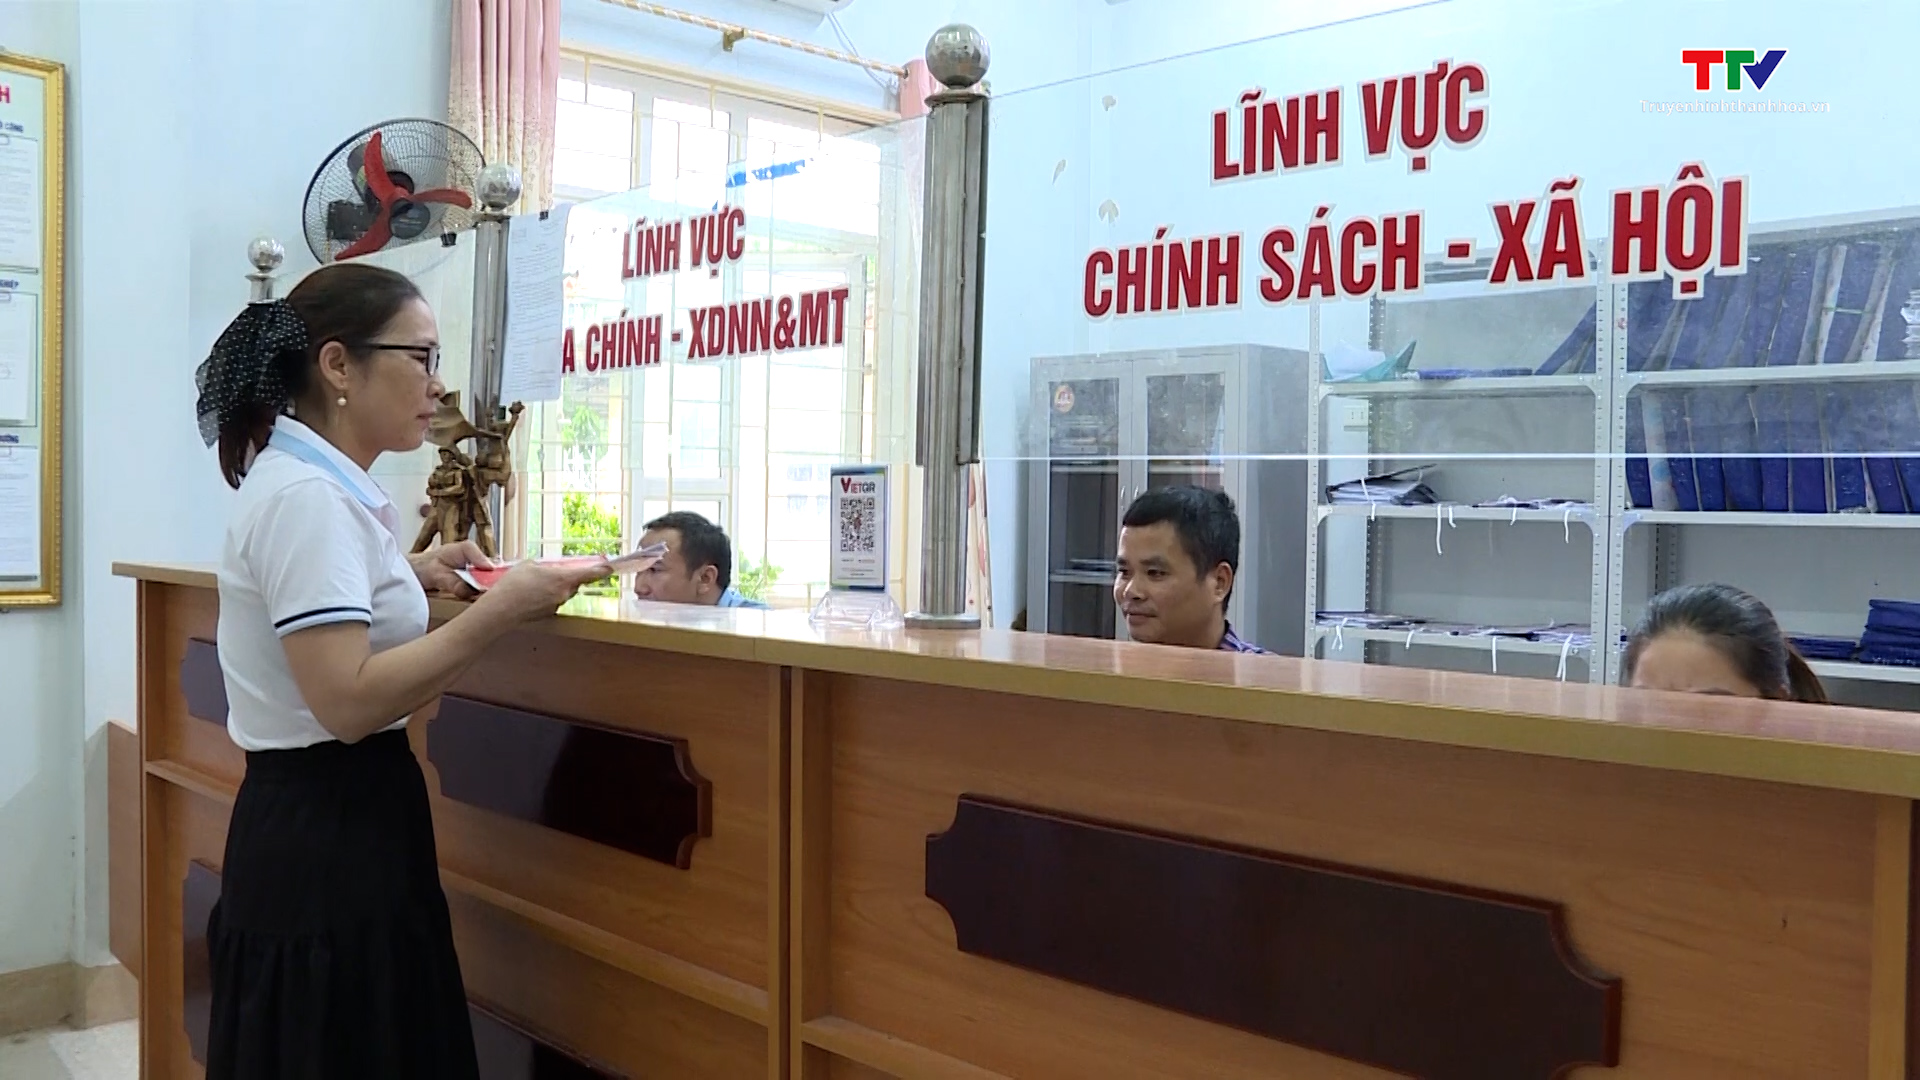 Huyện Yên Định đẩy mạnh cải cách hành chính, xây dựng nền hành chính hiện đại - Ảnh 2.